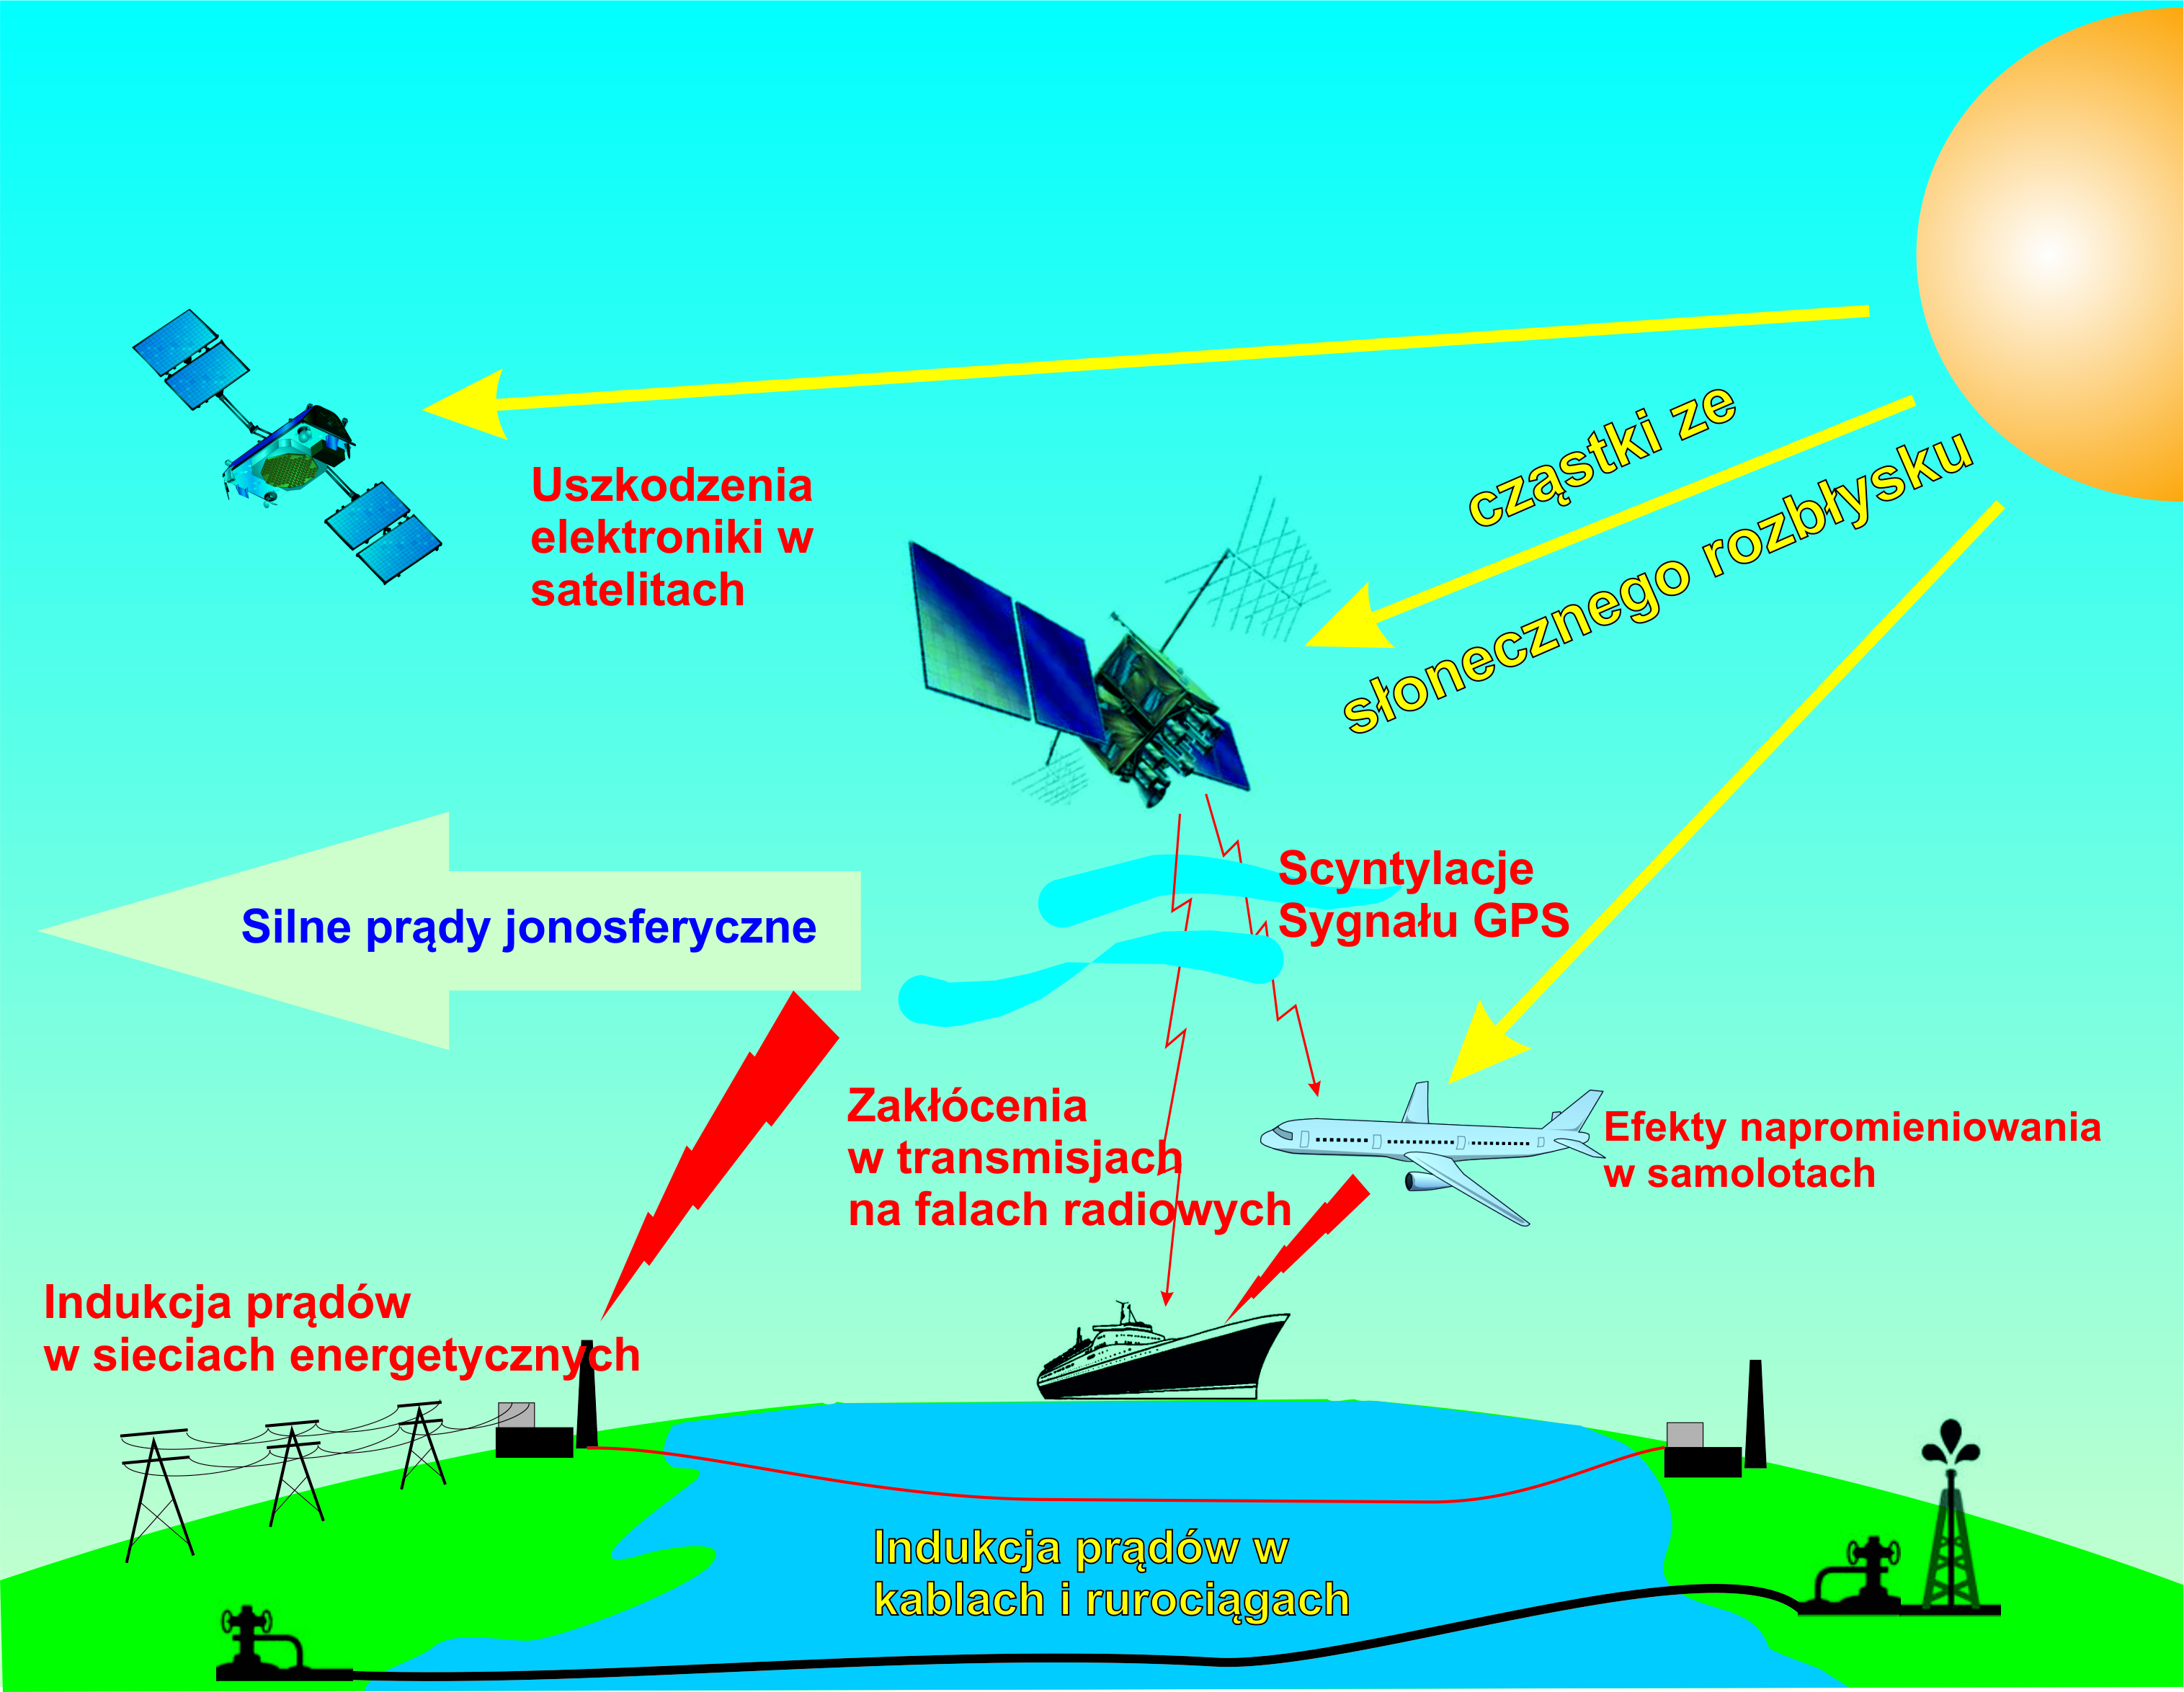 Wpływ Słońca na urządzenia wykorzystywane przez człowieka w transporcie i telekomunikacji.